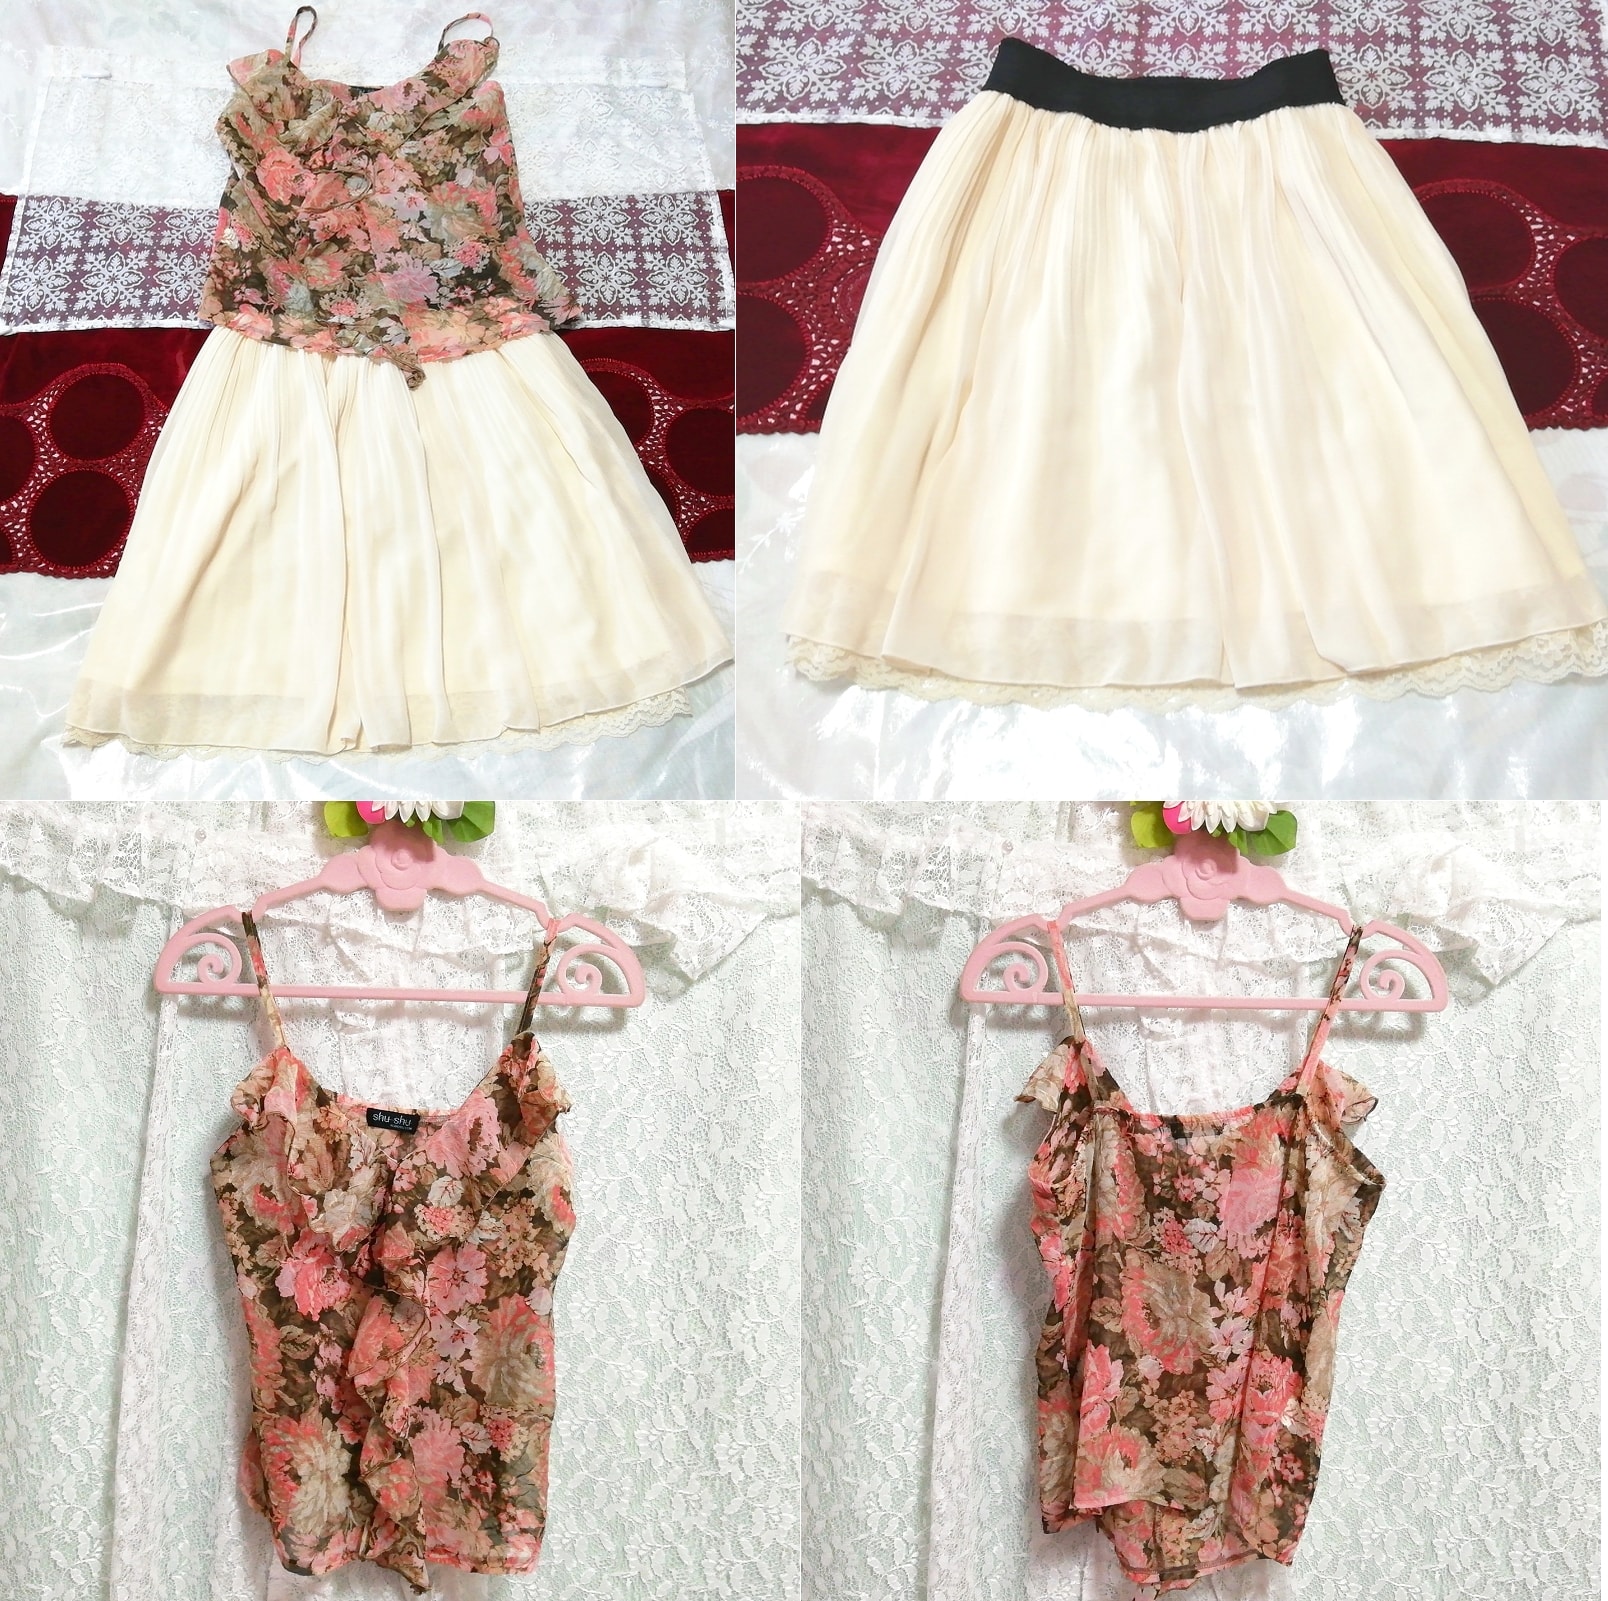 茶色ピンクシフォンキャミソール ネグリジェ フローラルホワイトスカート 2P Brown pink chiffon camisole negligee floral white skirt, ファッション, レディースファッション, ナイトウエア、パジャマ